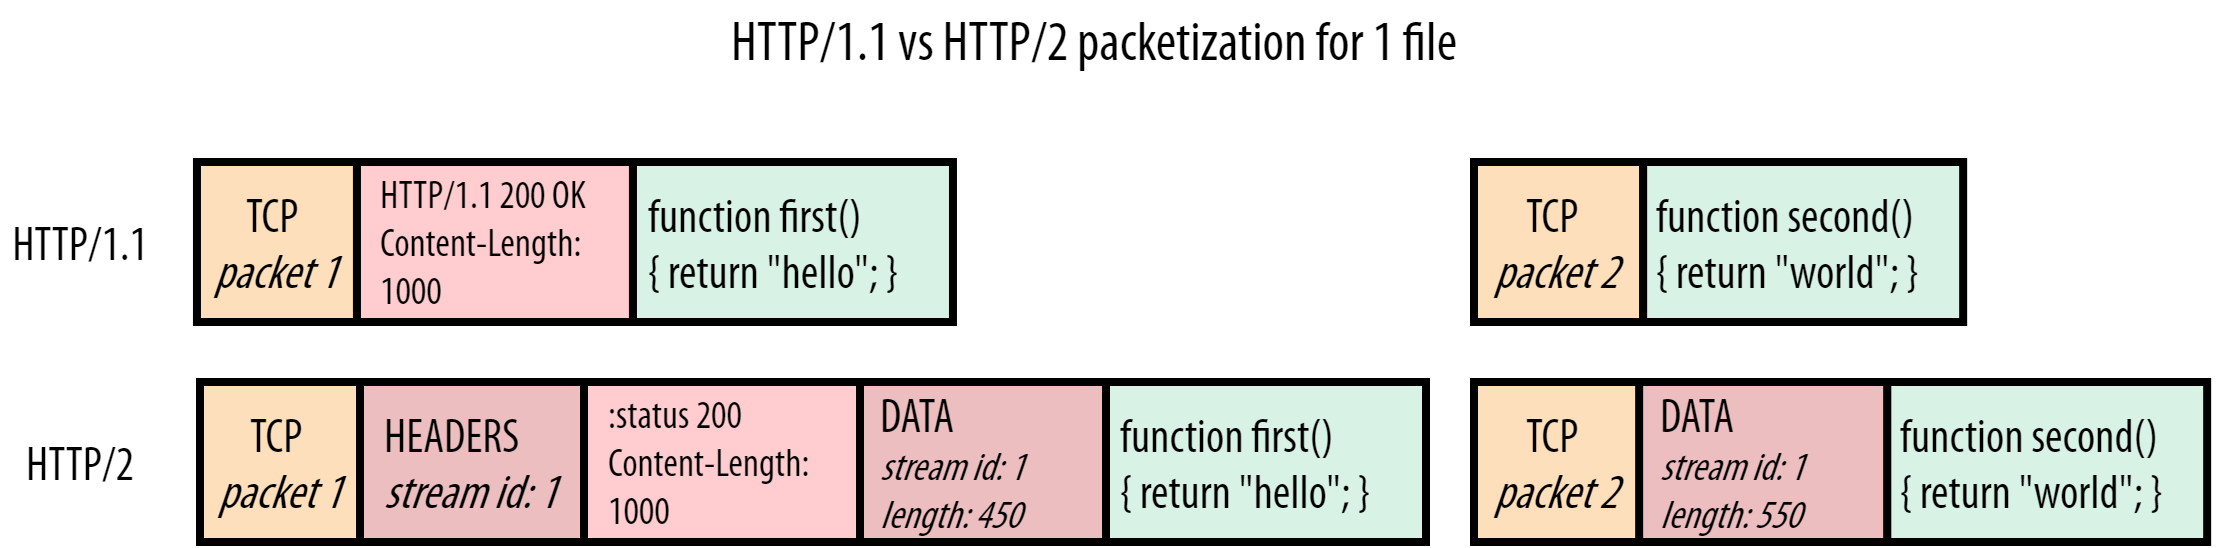 server HTTP/1.1 vs HTTP/2 response for script.js